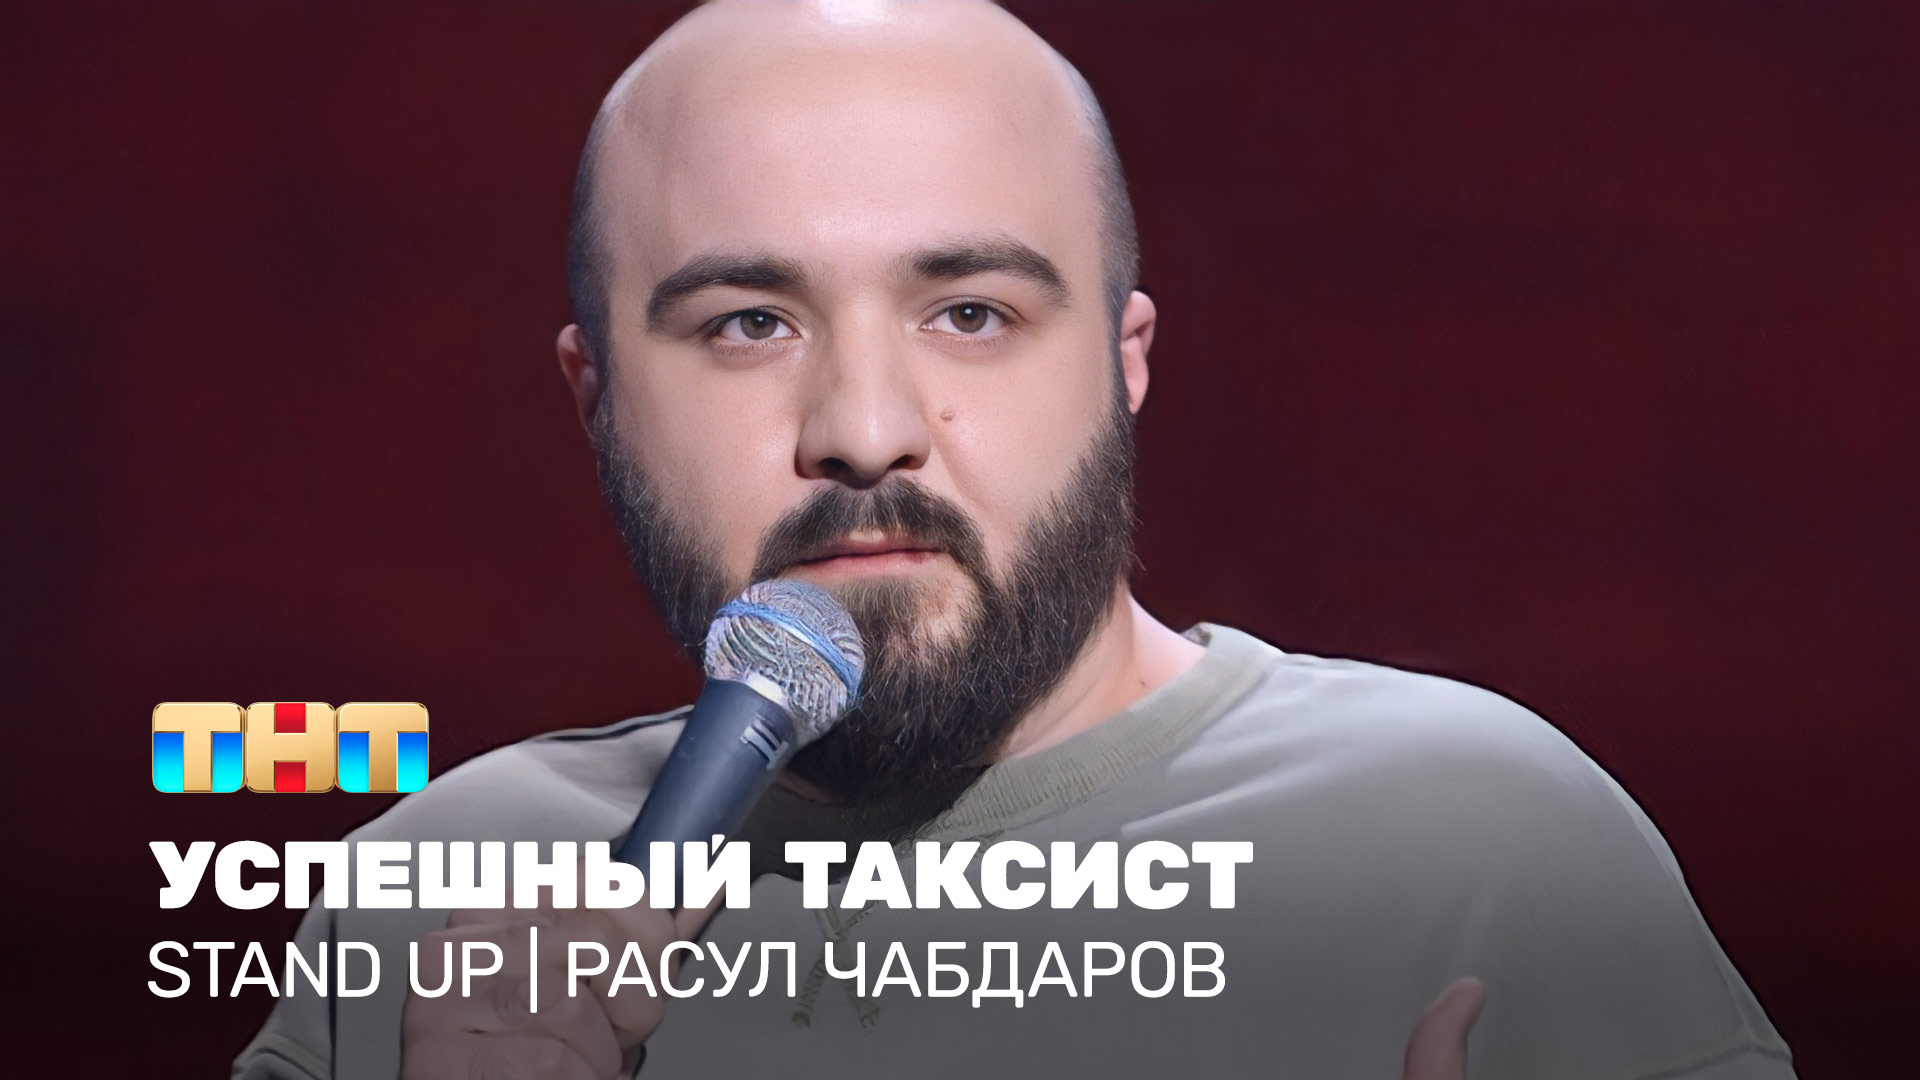 Stand UP: Расул Чабдаров - успешный таксист